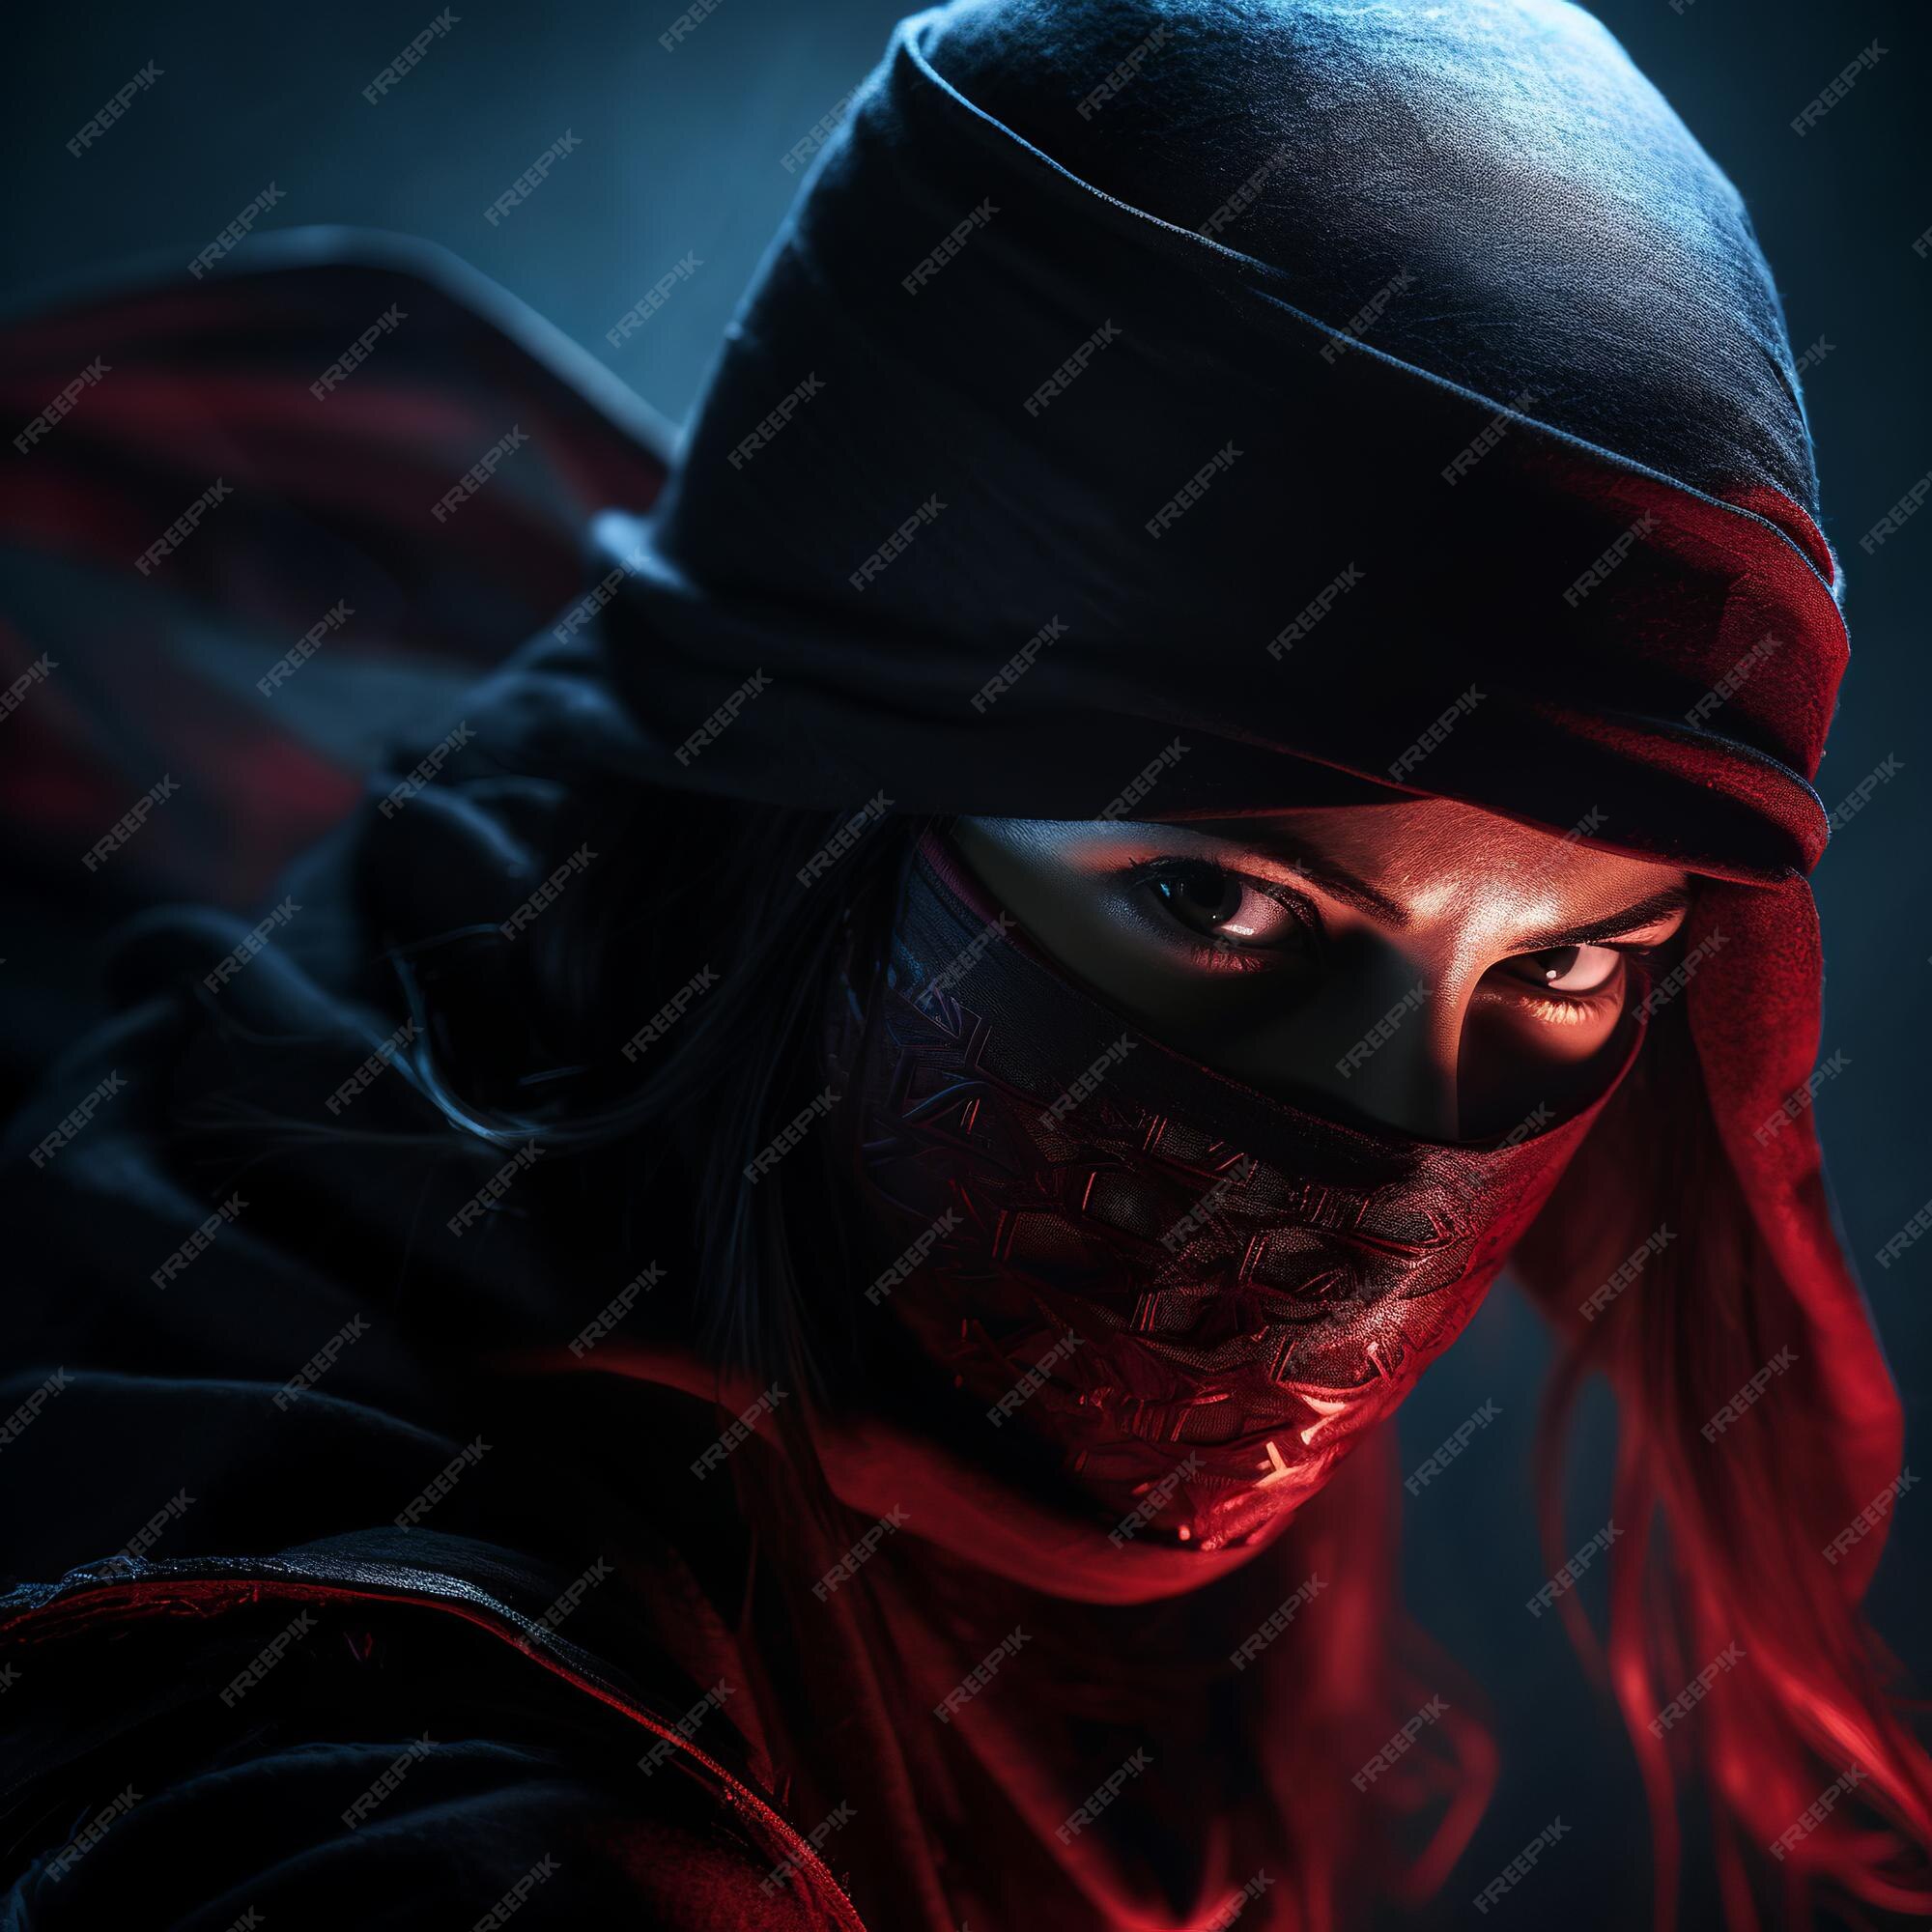 Ilustração de ninja assassin woman mascarada de corpo inteiro com luz suave  nat